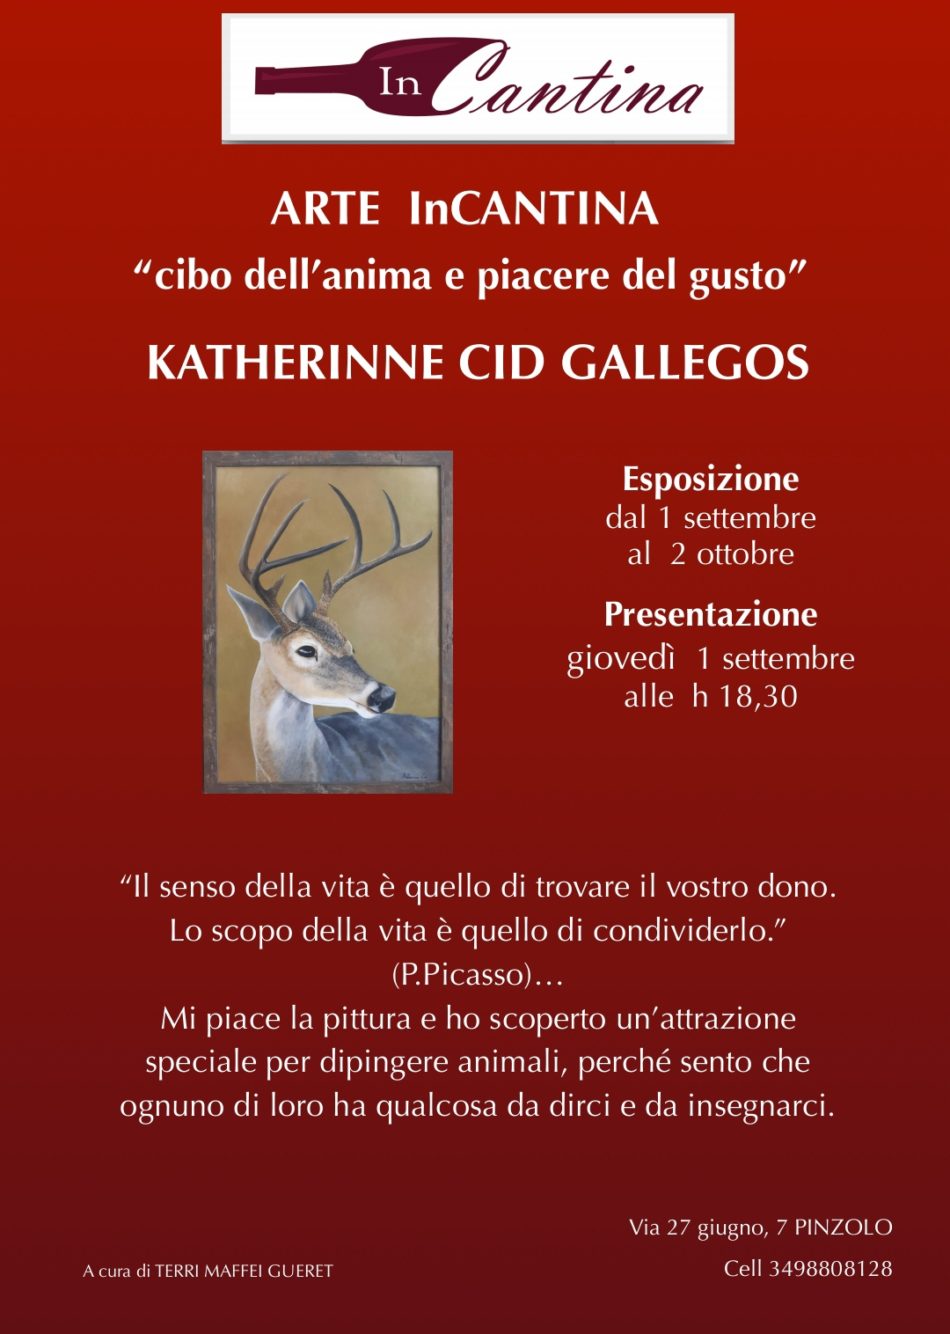 Giovedì 1 settembre ore 18.30: Presentazione ARTE InCANTINA “KATHERINNE CID GALLEGOS”